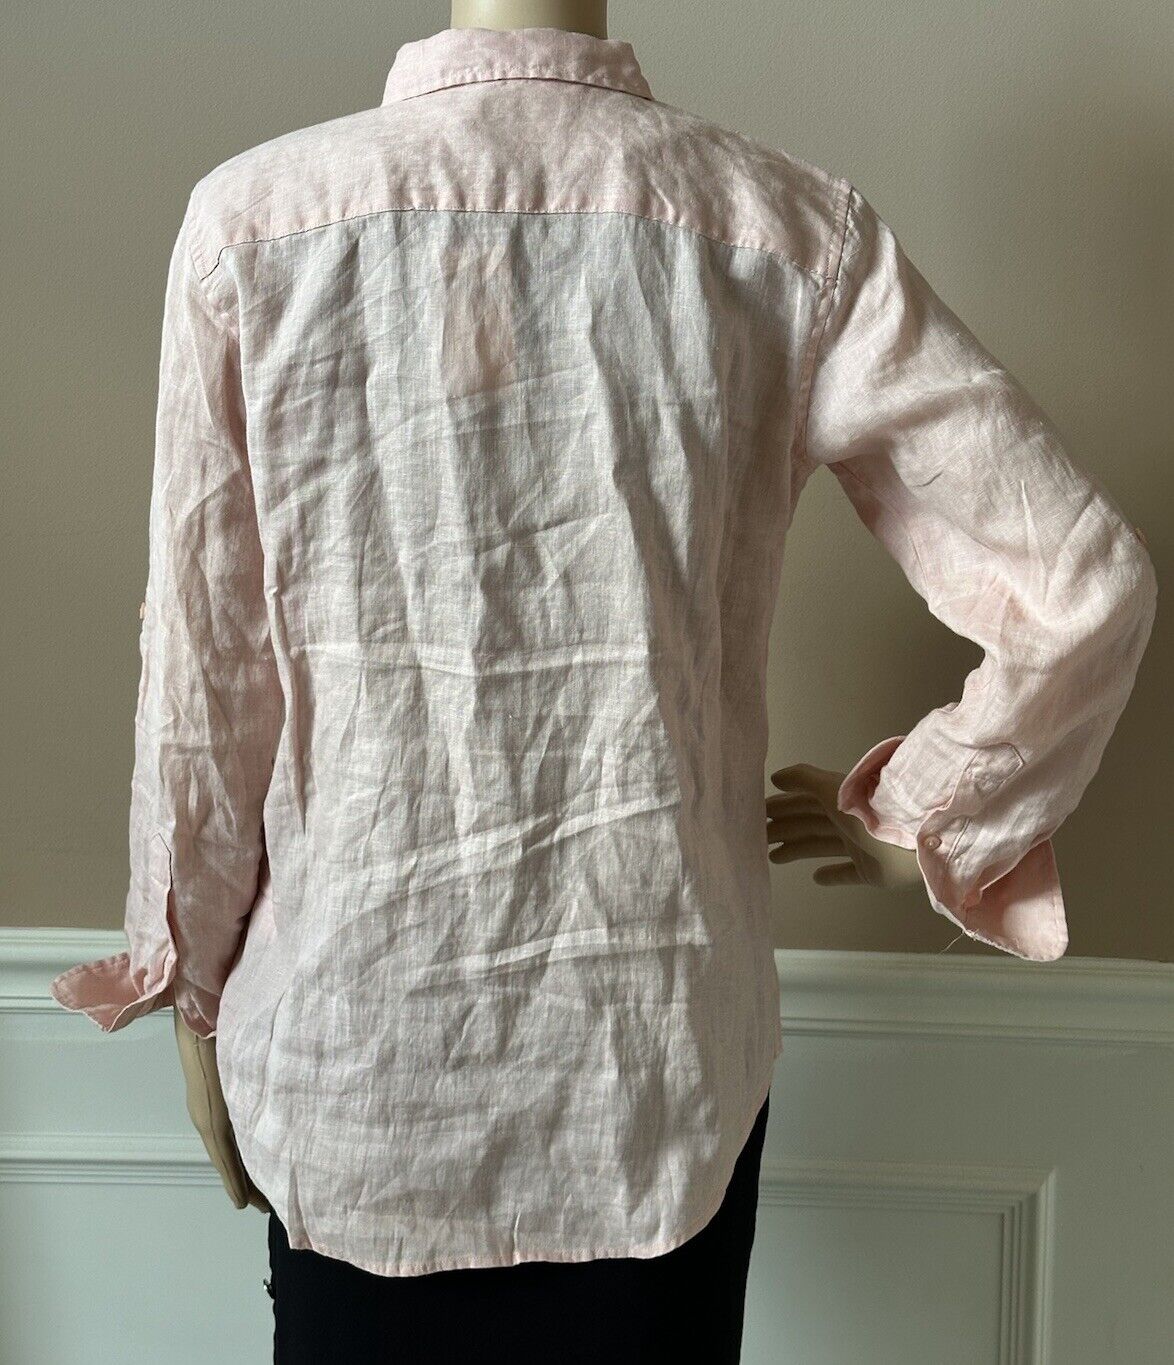 NWT $115 Lauren Ralph Lauren Women’s Linen Long Sleeve Shirt Pale Pink Large